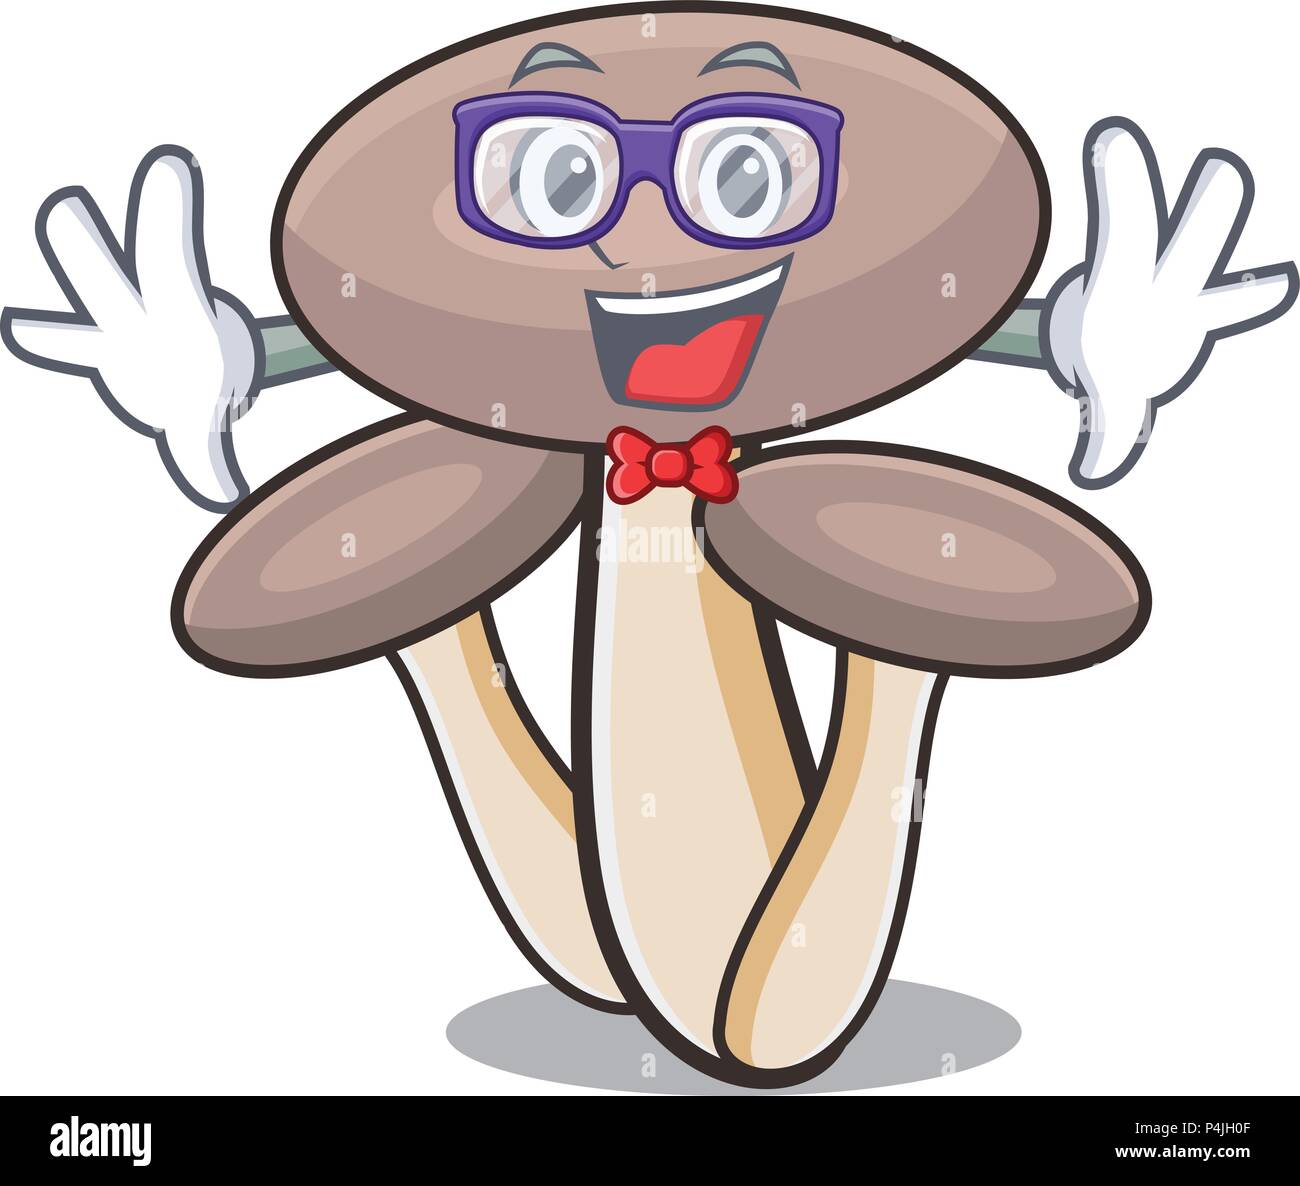 Geek honey agaric mushroom character cartoon Stock Vector